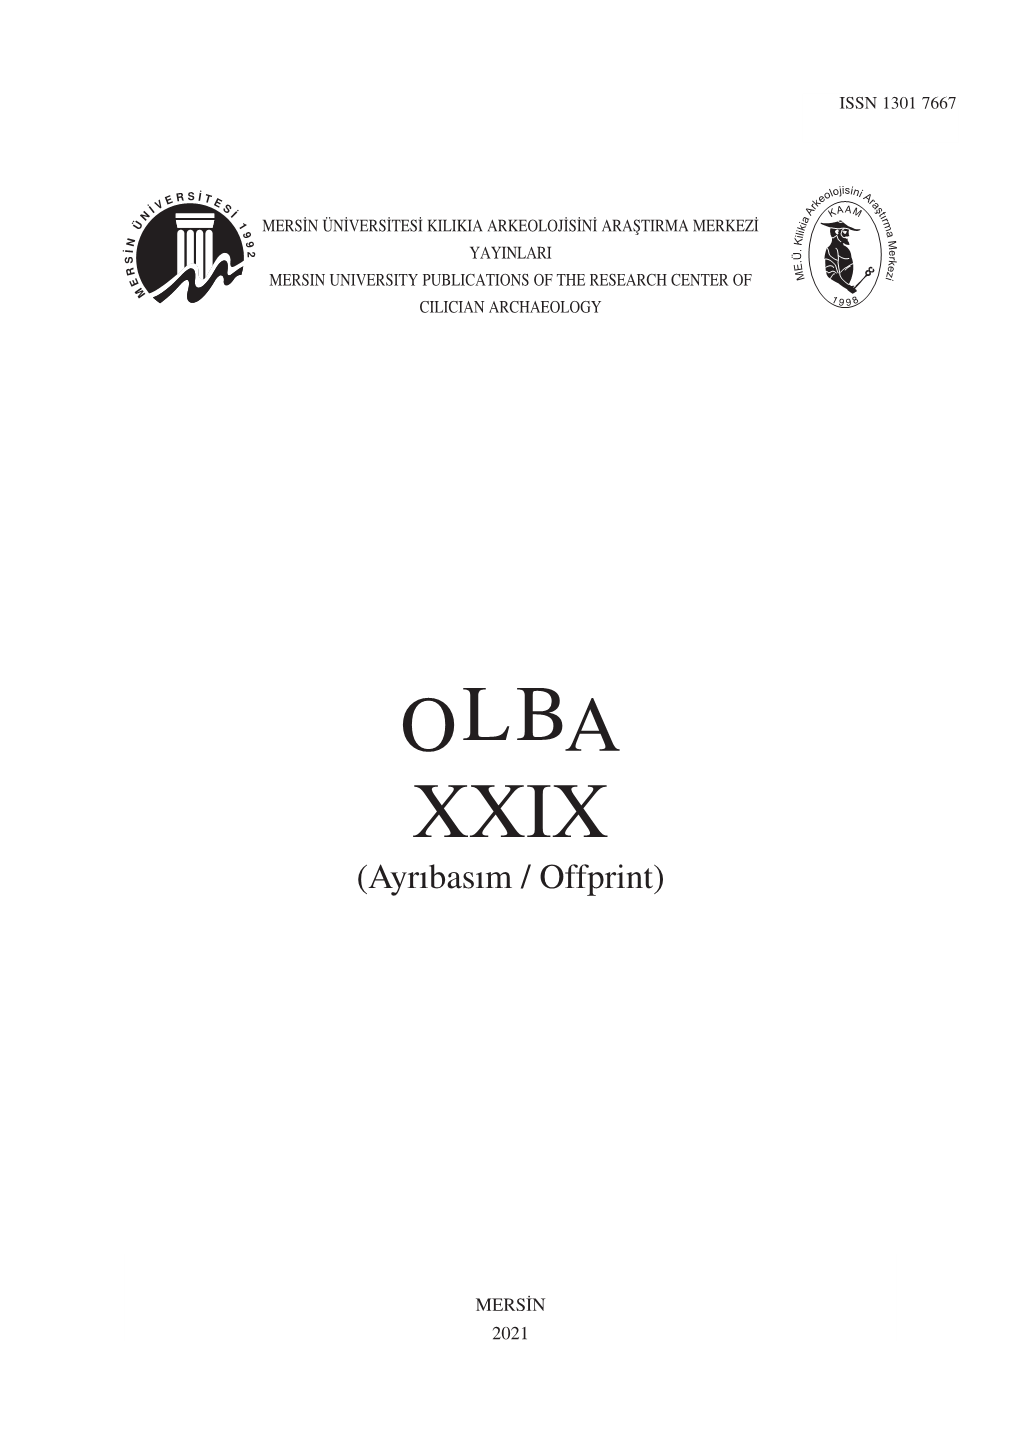 OLBA XXIX (Ayrıbasım / Offprint)